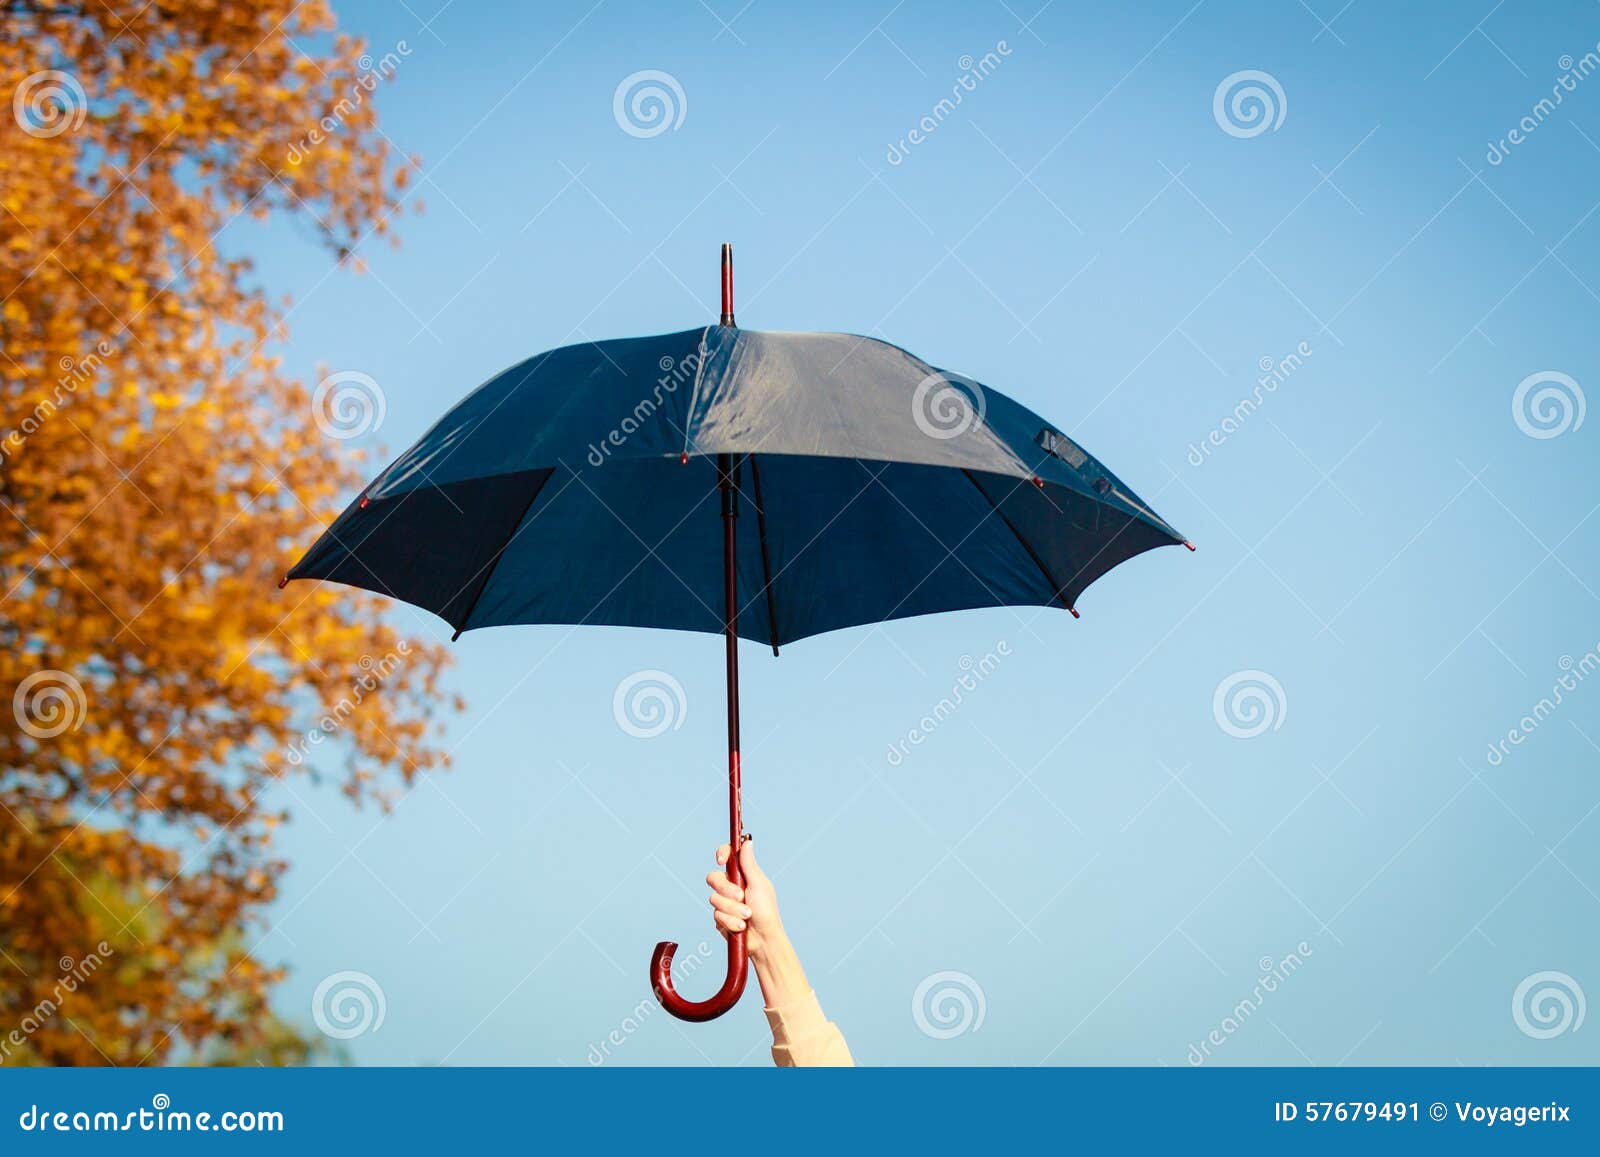 Зонтик раскрылся